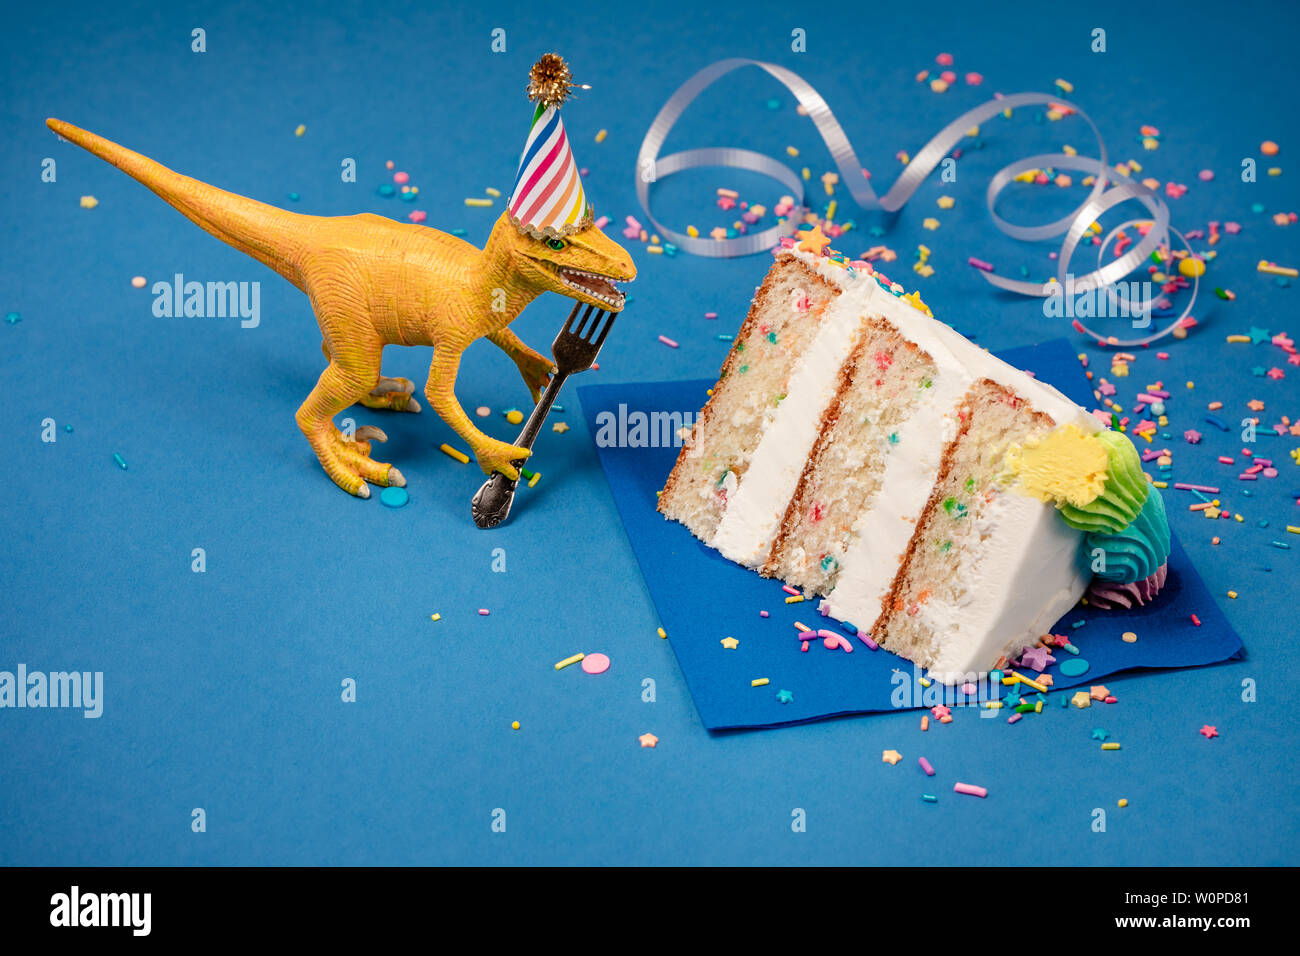 Spielzeug Dinosaurier Holding eine Gabel neben einem Stück Torte auf einem blauen Hintergrund. Stockfoto